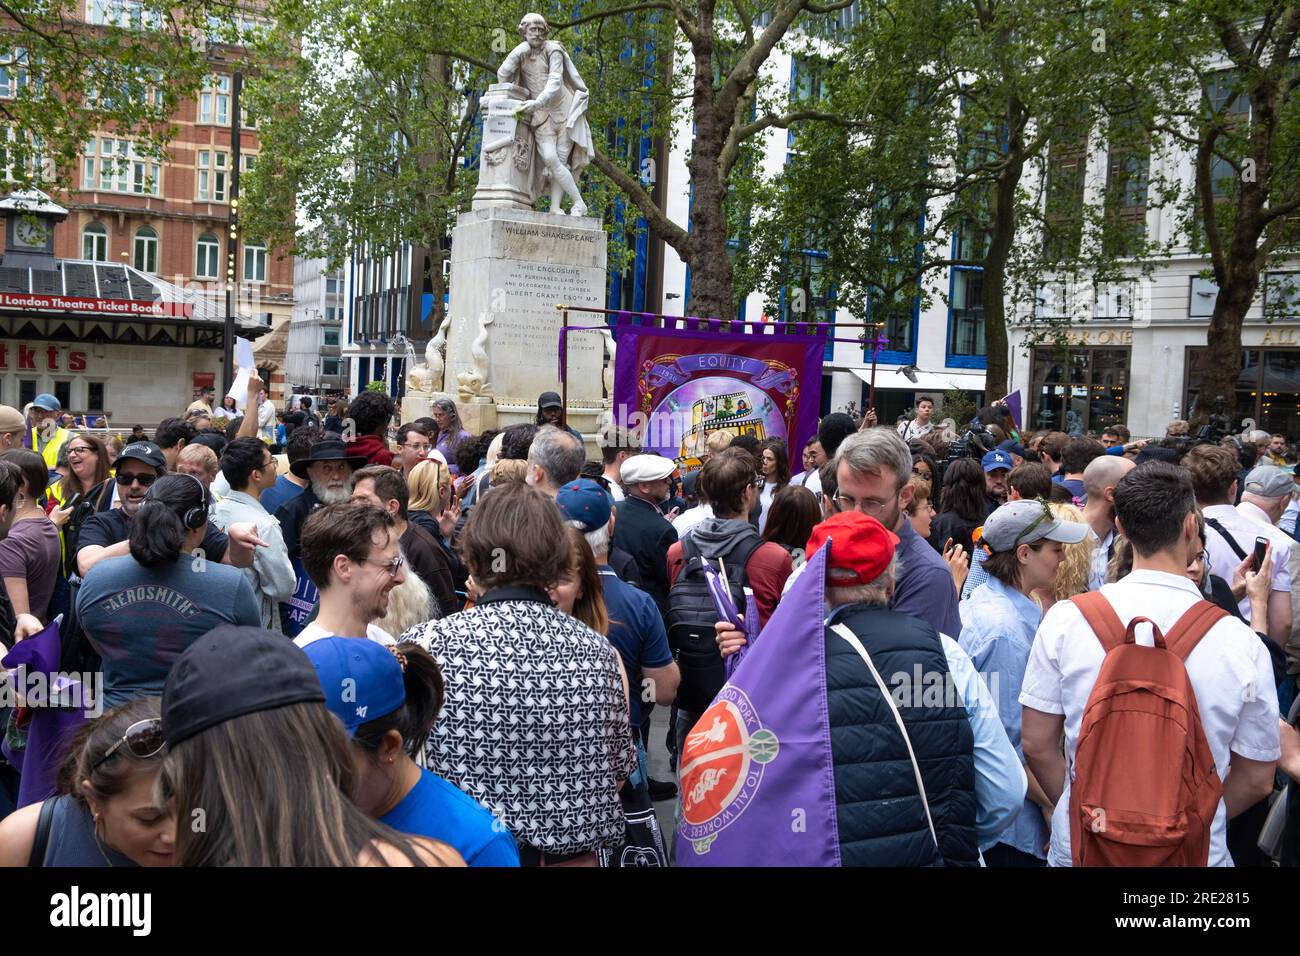 Membri dell'Unione azionaria al raduno azionario di Londra, in solidarietà con gli attori SAG-AFTRA scioperano in America per ottenere una retribuzione equa. Foto Stock